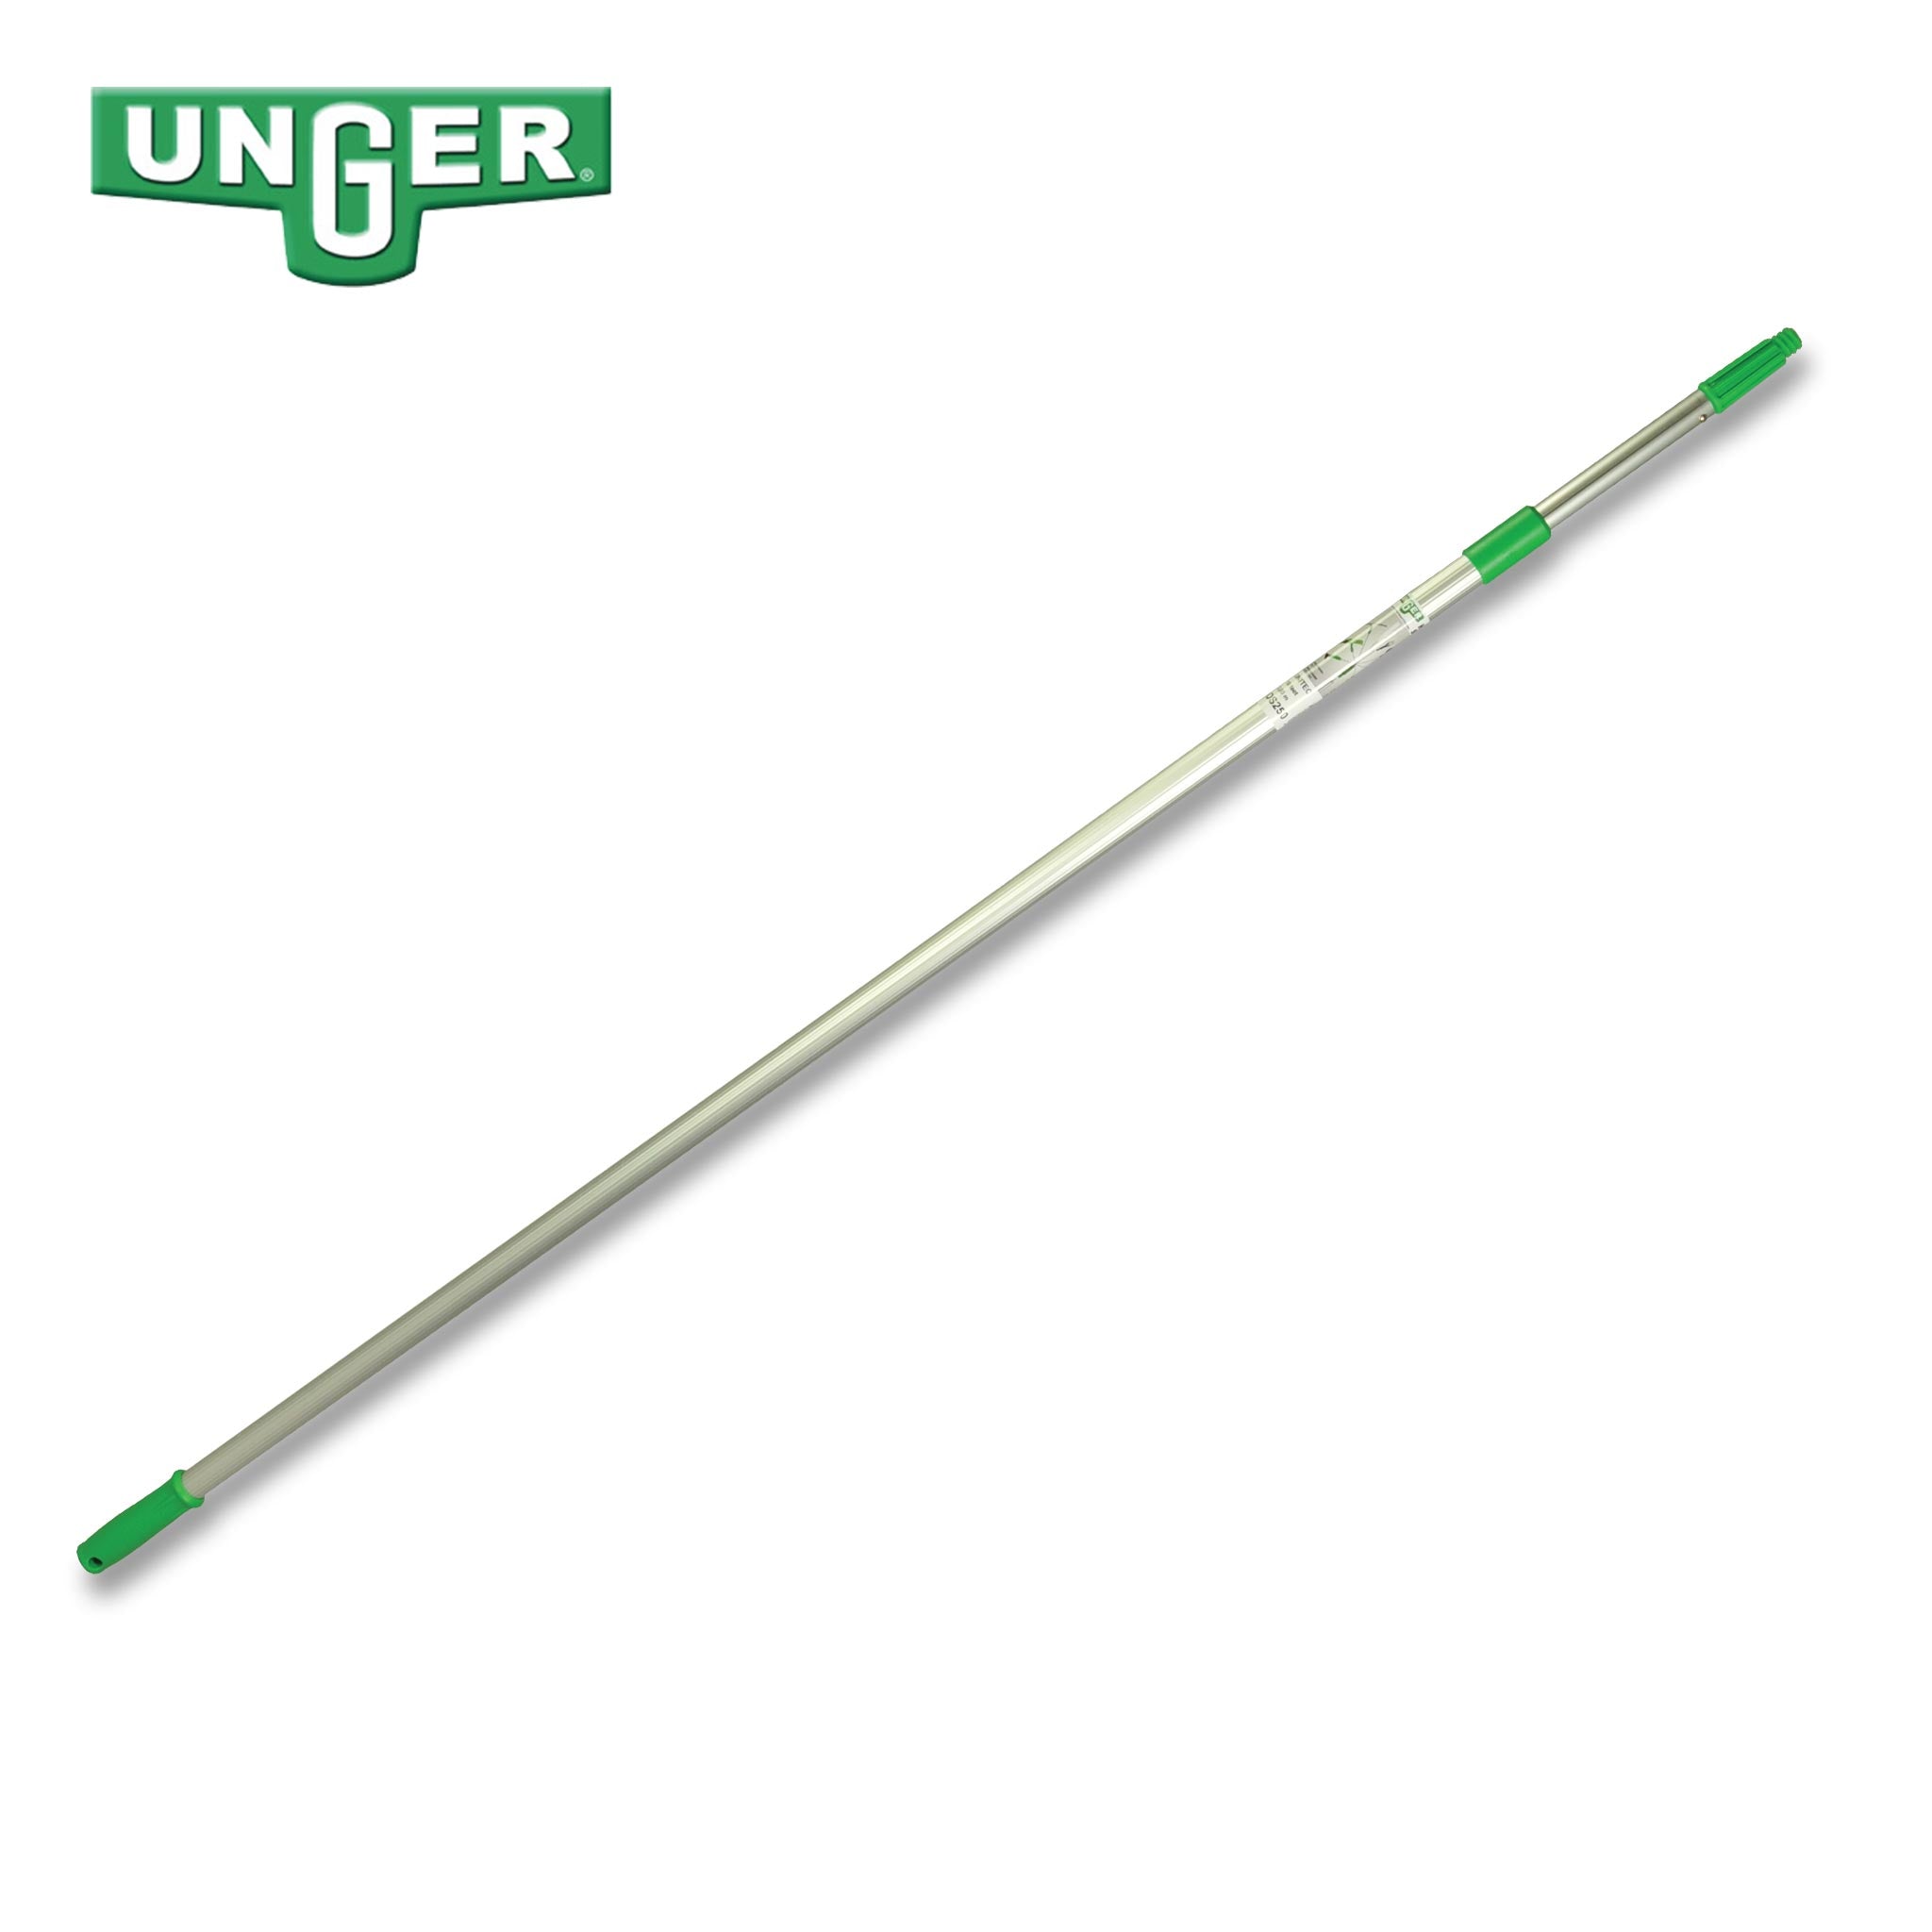 Unger UniTec Extension Pole